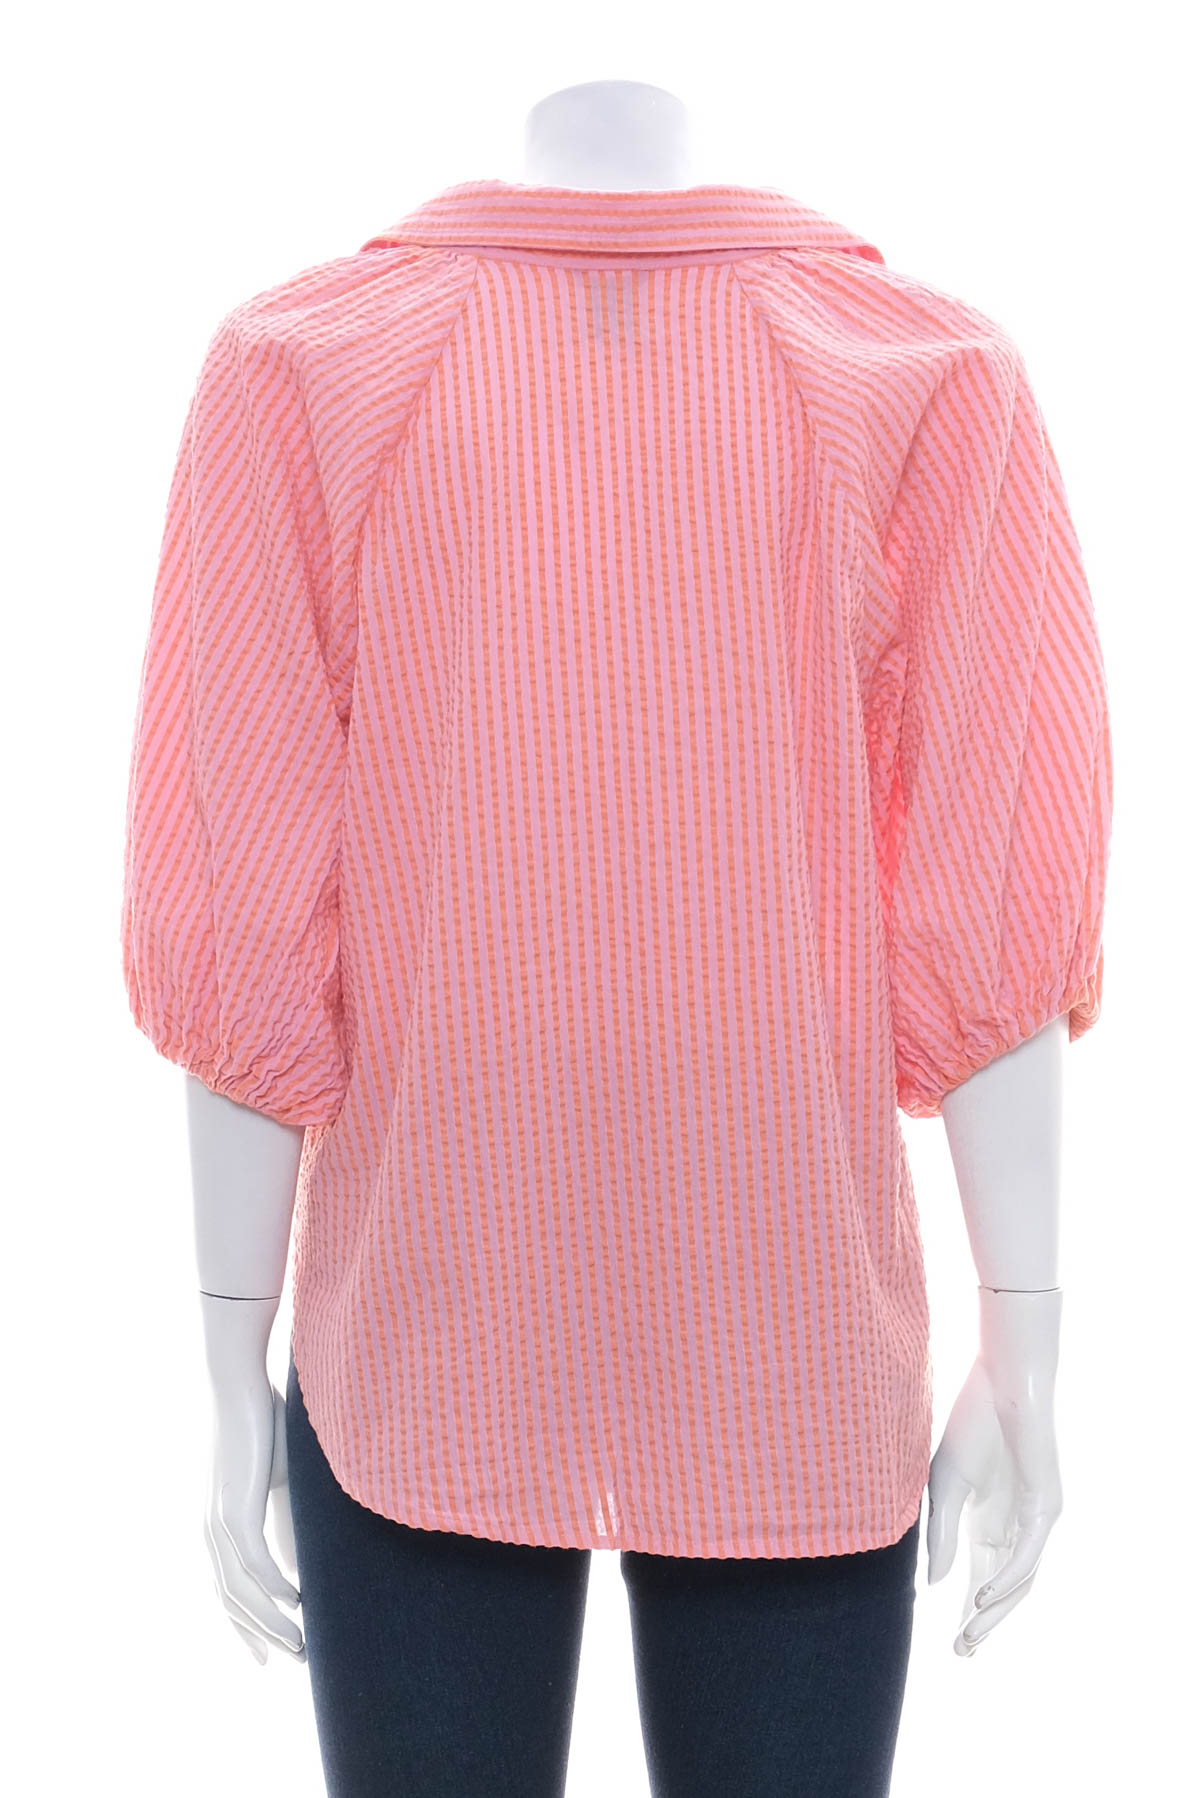 Γυναικείο πουκάμισο - LINDEX - 1